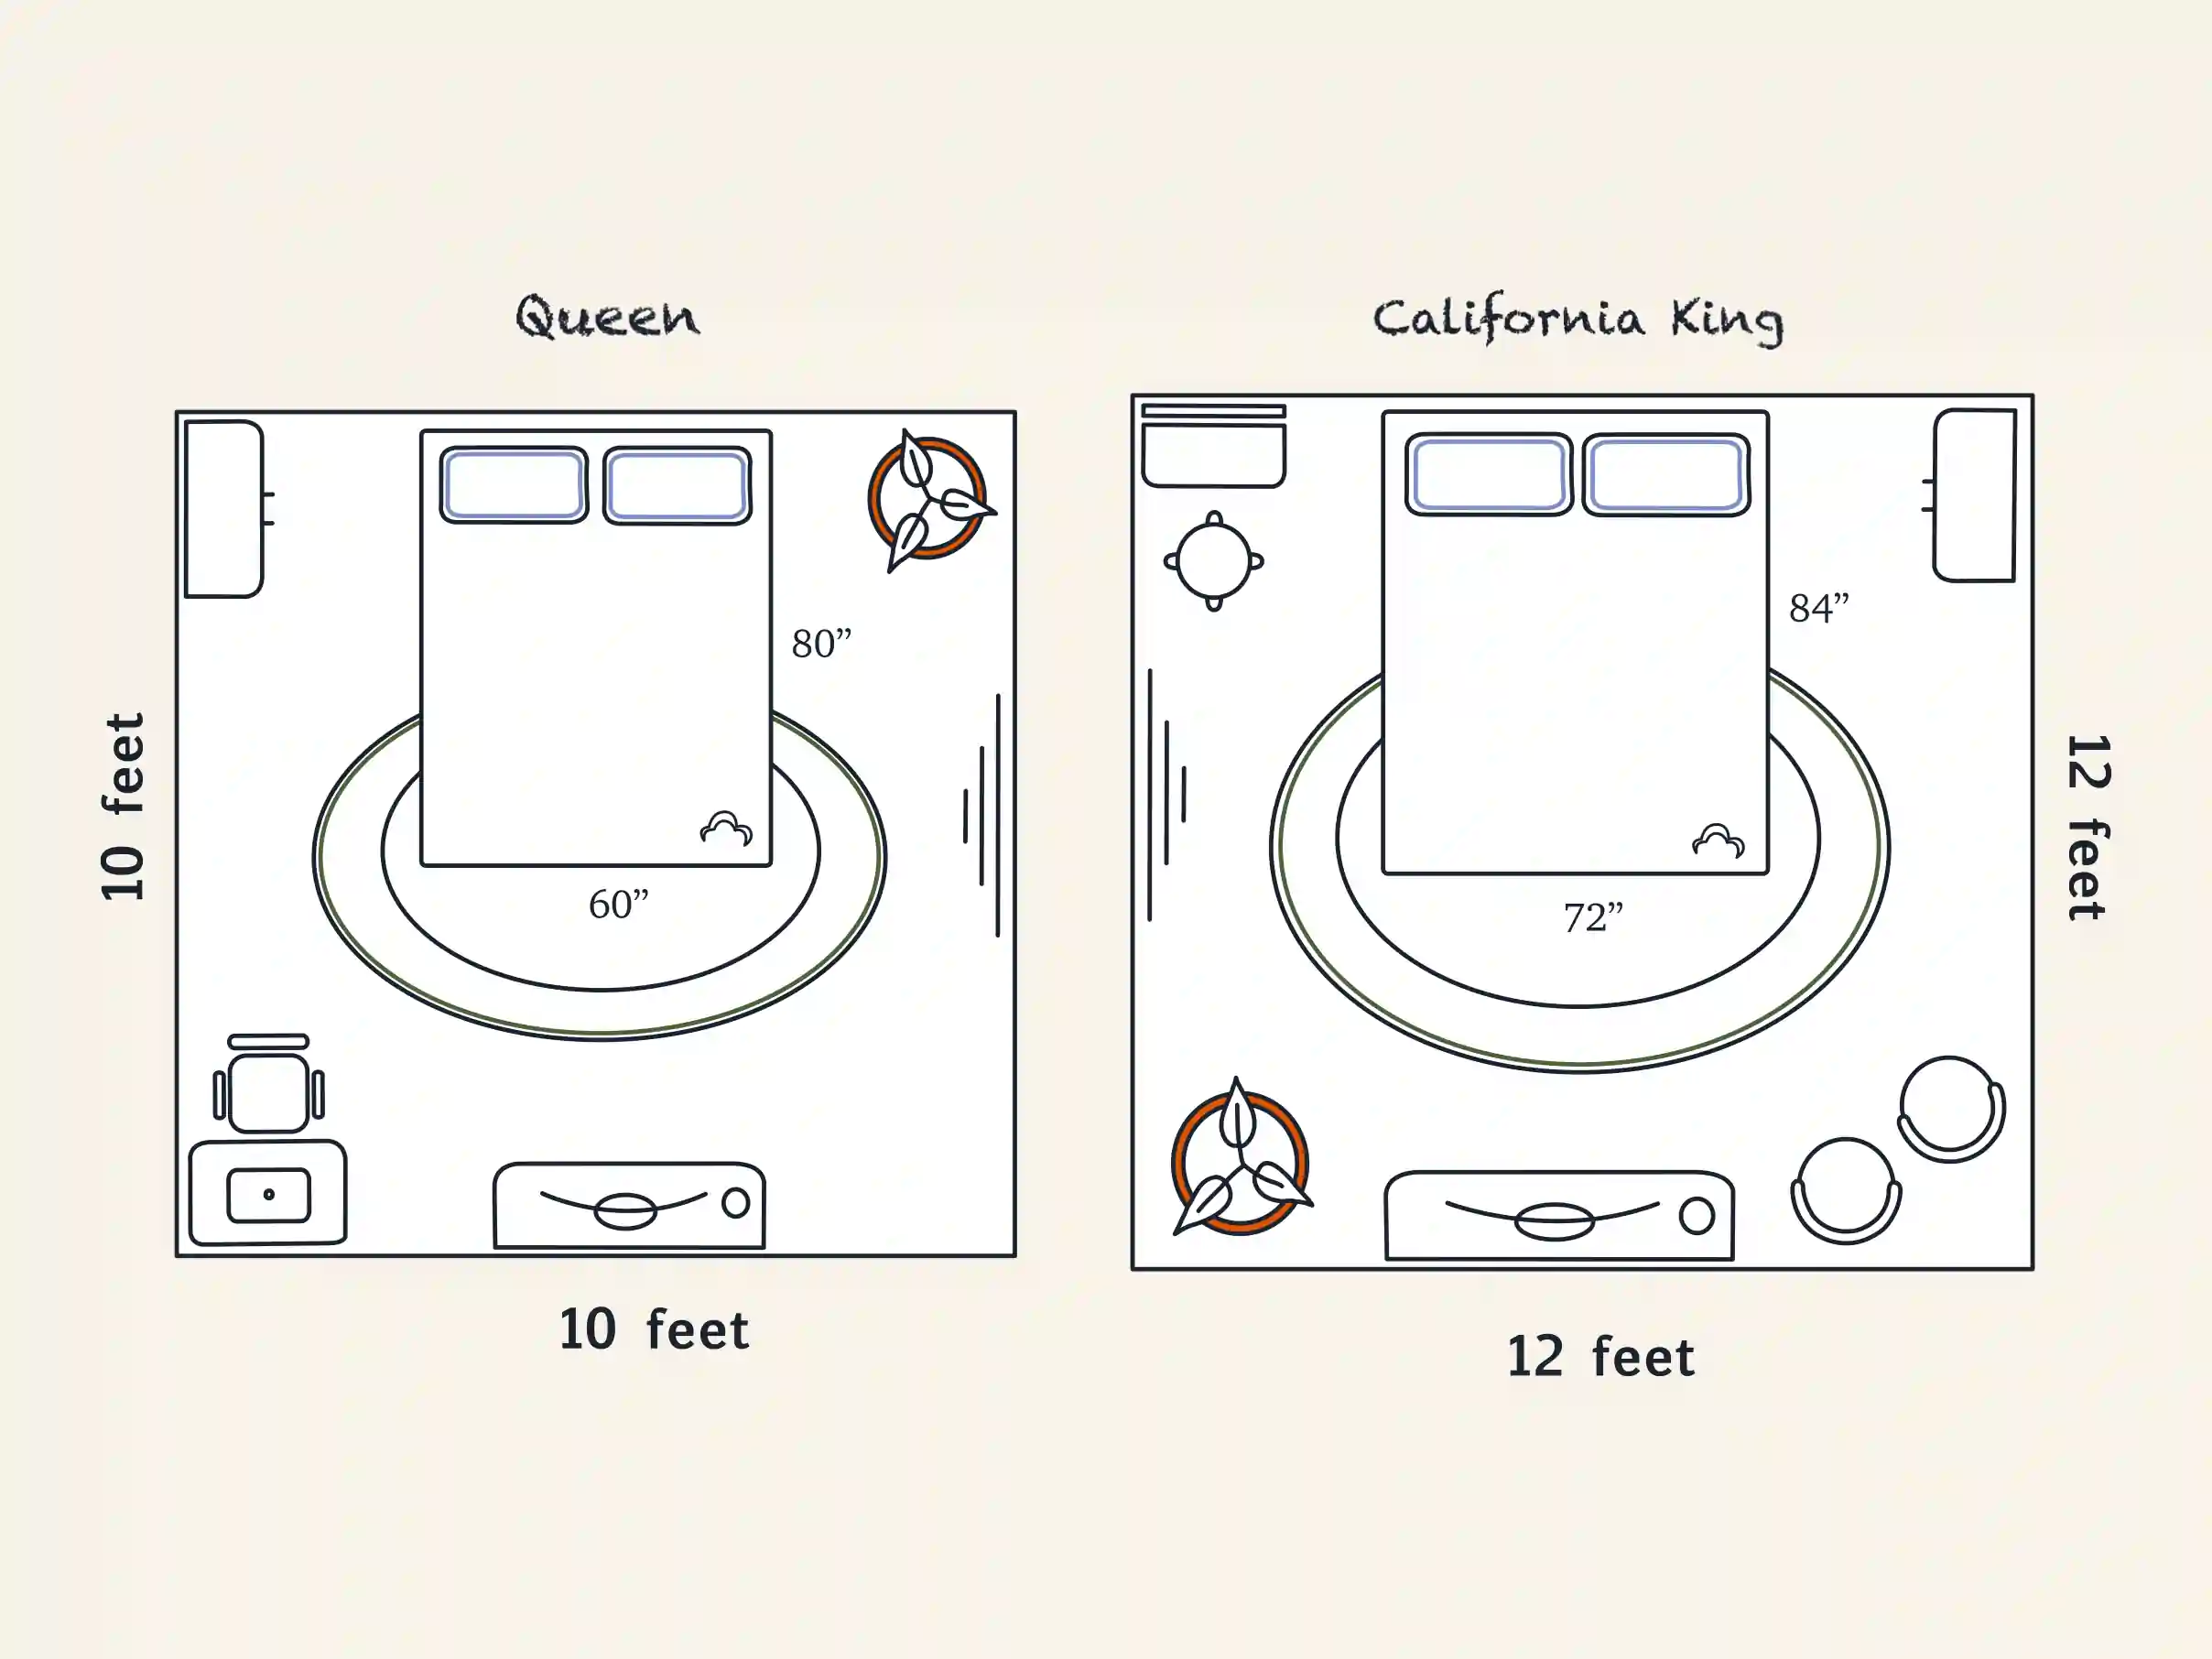 California King vs Queen Mattress Size